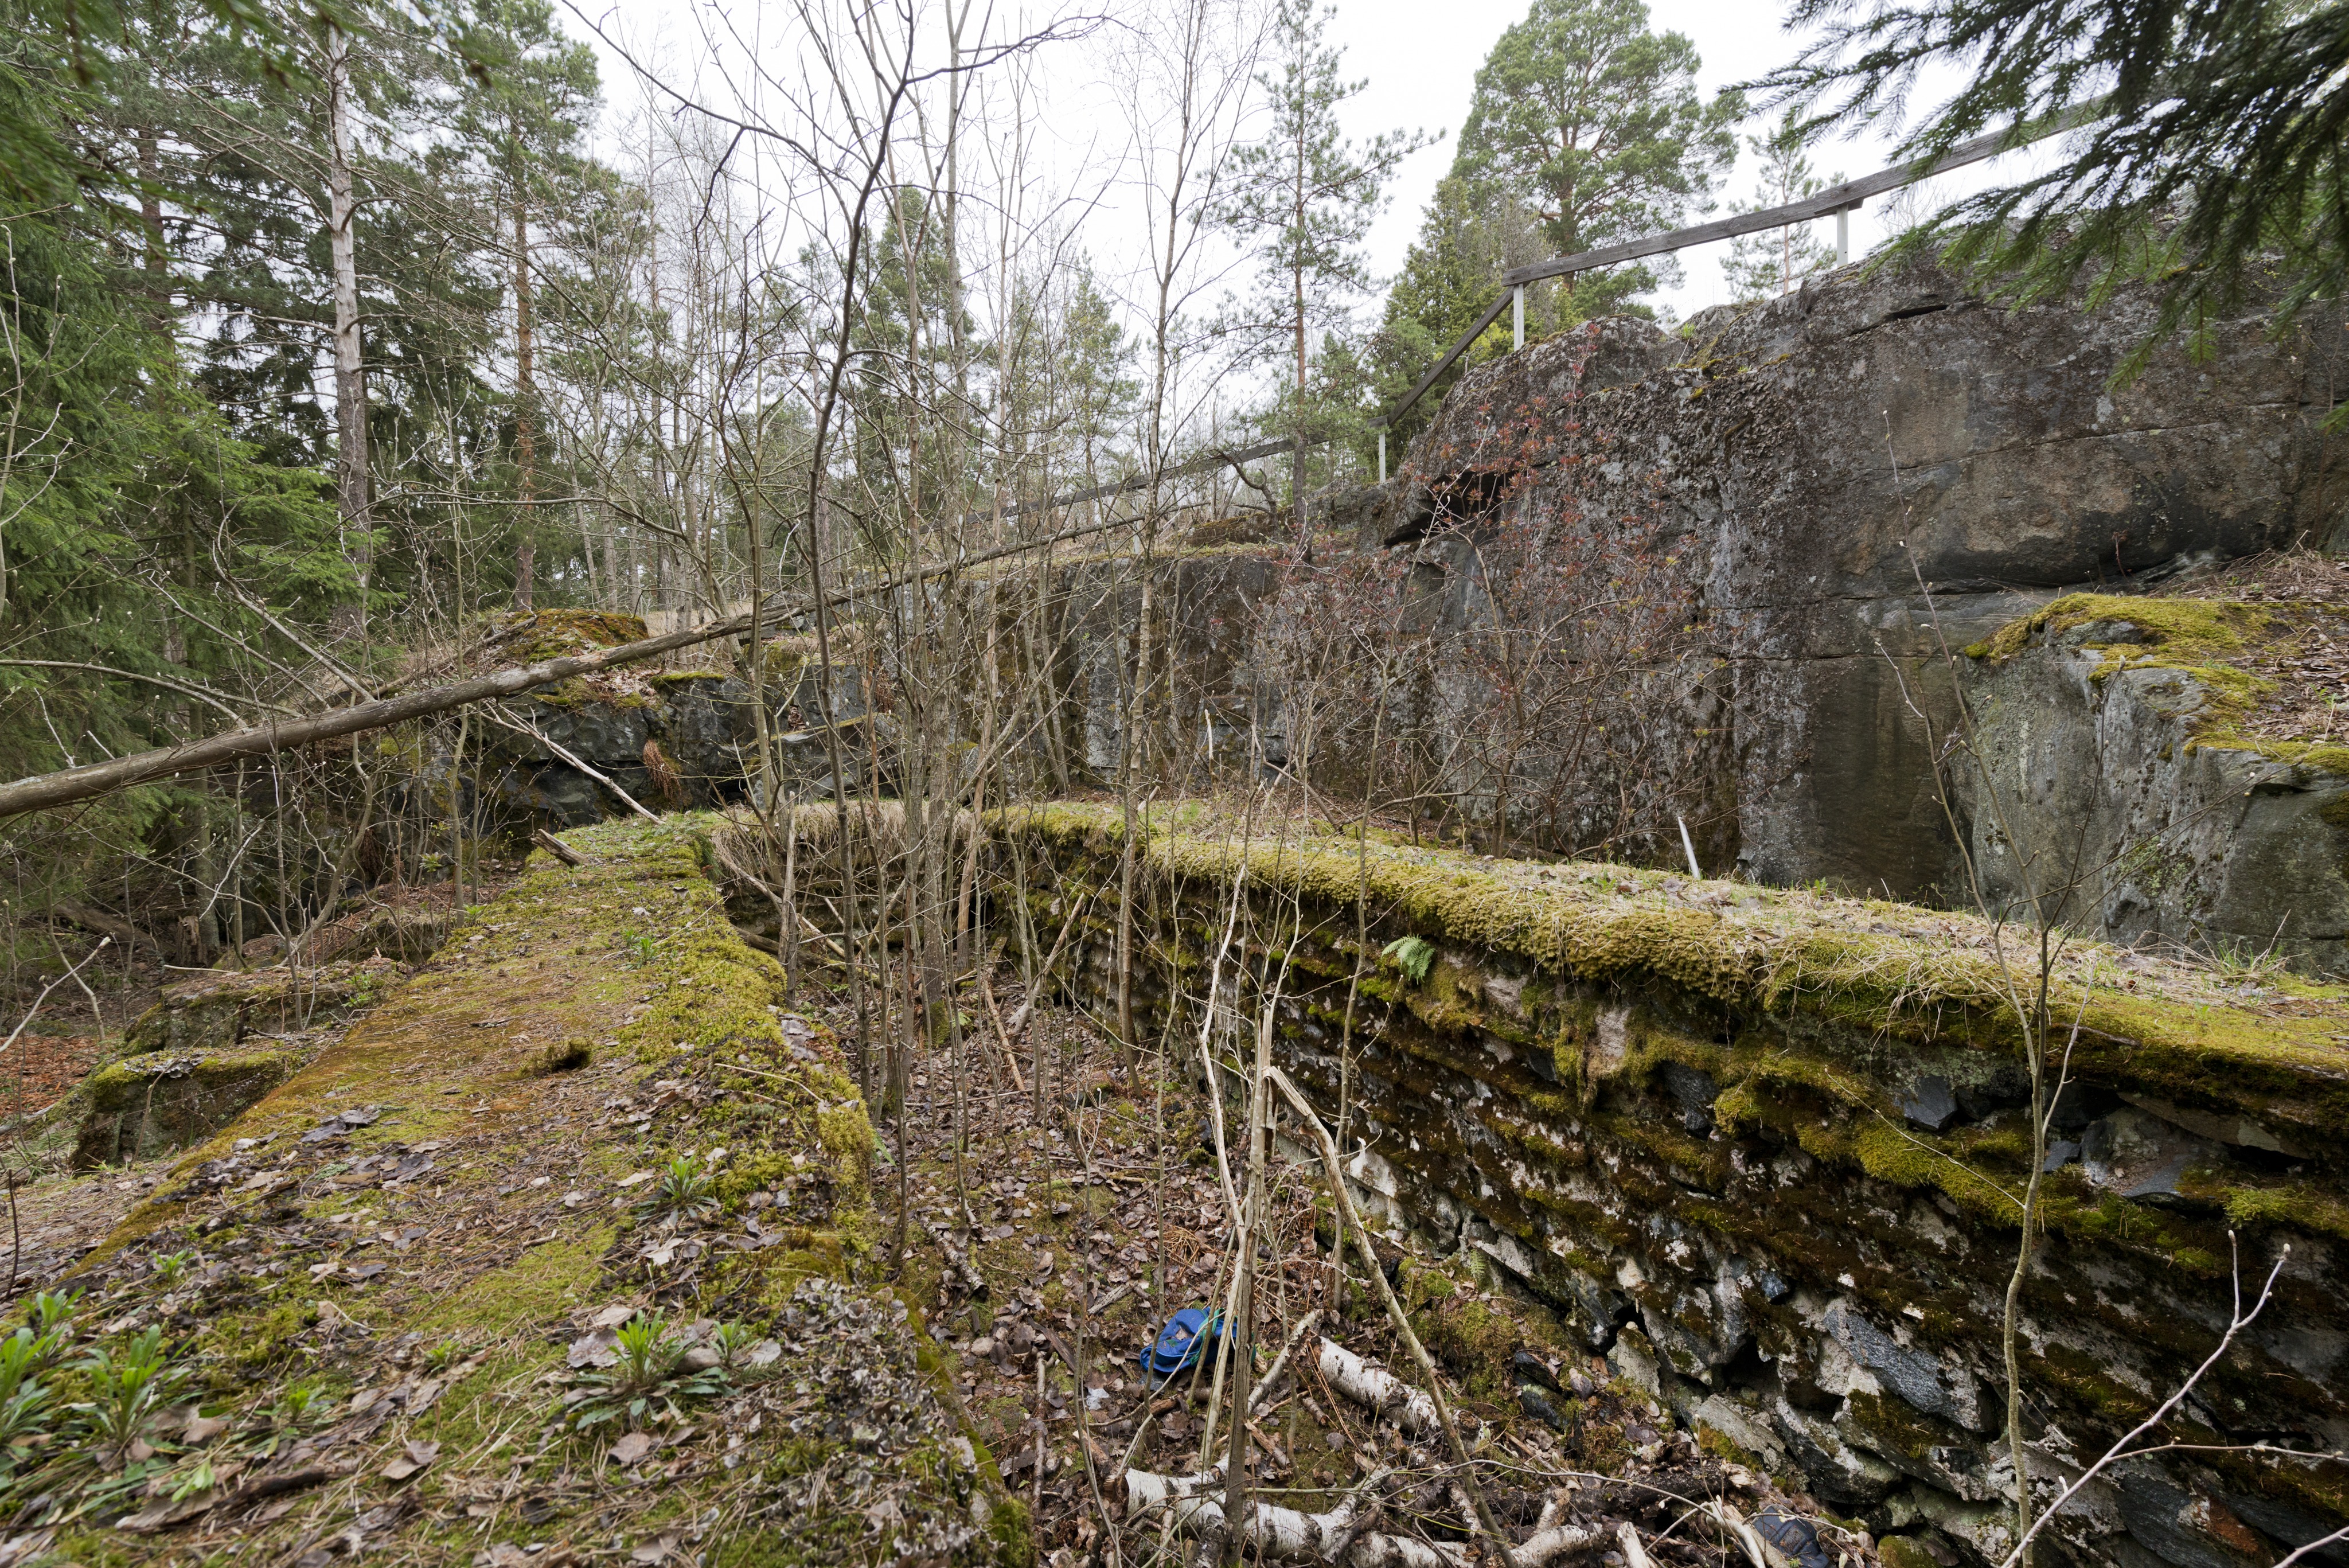 Mäkkylä. Ensimmäisen maailmansodan aikainen maalinnoitus, puolustusasema XXVIII:19 Mäkkylässä, Espoossa. Kuvassa on aseman lounaisosassa sijaitseva tuliasemarakenne neljälle kiväärimiehelle ja yhdelle konekiväärille, kuvassa näkyvät vasemmalla ampuma-aukot. Rakenne on tehty valamalla betonia hirsikehikoiden keskelle. Asema oli myös katettu hirrellä, joka peitettiin maalla. Kaikki hirsirakenteet on myöhemmin purettu ja maa-ainekset kasattu ampuma-aukkojen eteen. Seinissä erottuu hirsirakenteista jääneet painaumat. Aseman takana olevan kallion reunaa kiertää puinen kaide. Aseman pohjalla kasvaa vesakkoa. Kuvaussuunta länteen.